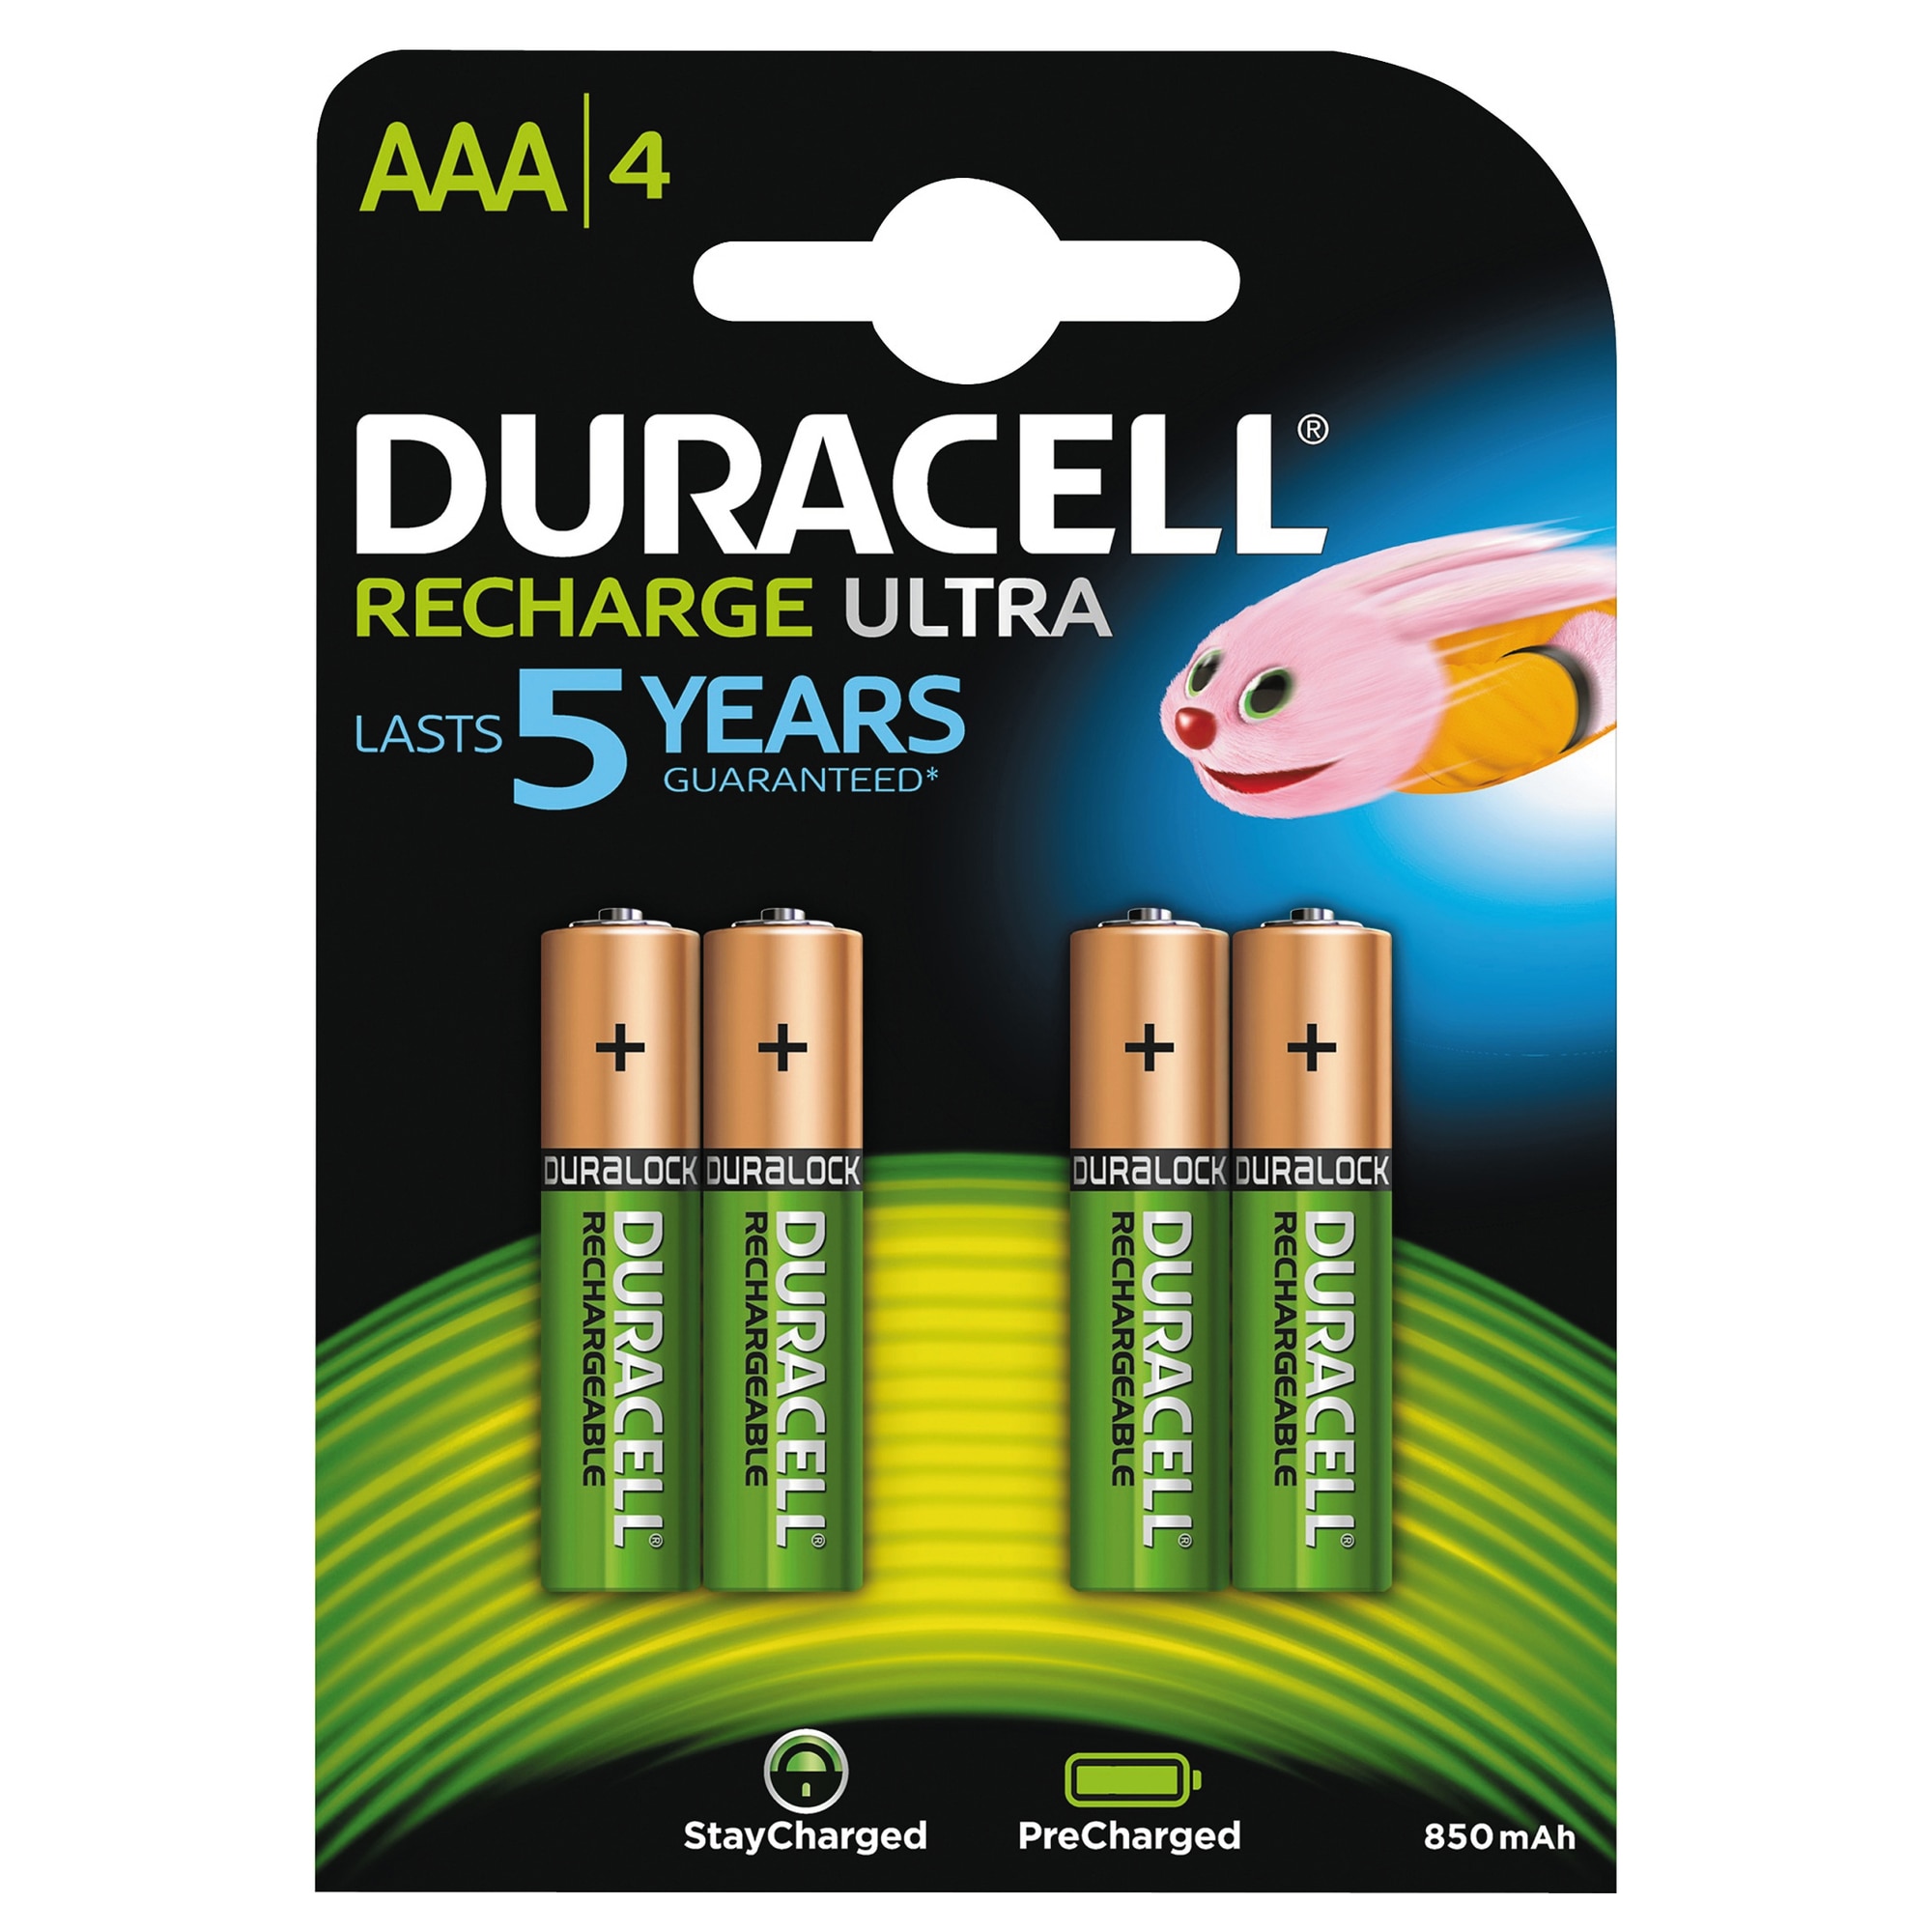 Duracell Recharge Ultra AAA Alkaline-batterier - 4-pak thumbnail